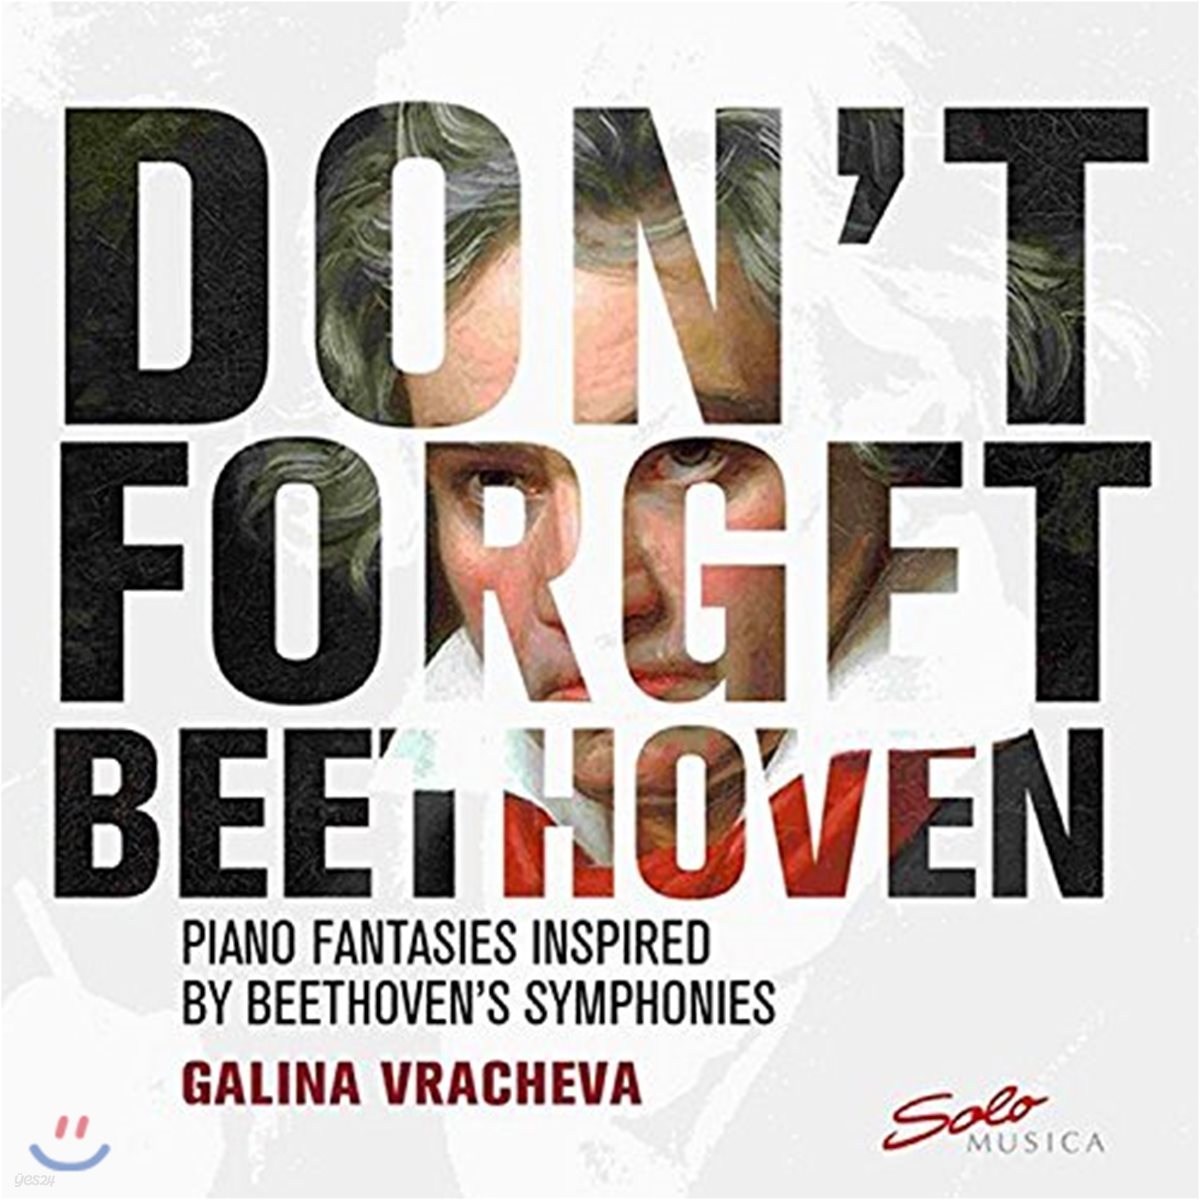 Galina Vracheva 갈리나 브라체바 - 베토벤 교향곡으로부터 인상을 받아 작곡한 피아노 작품집 (Don't Forget Beethoven)